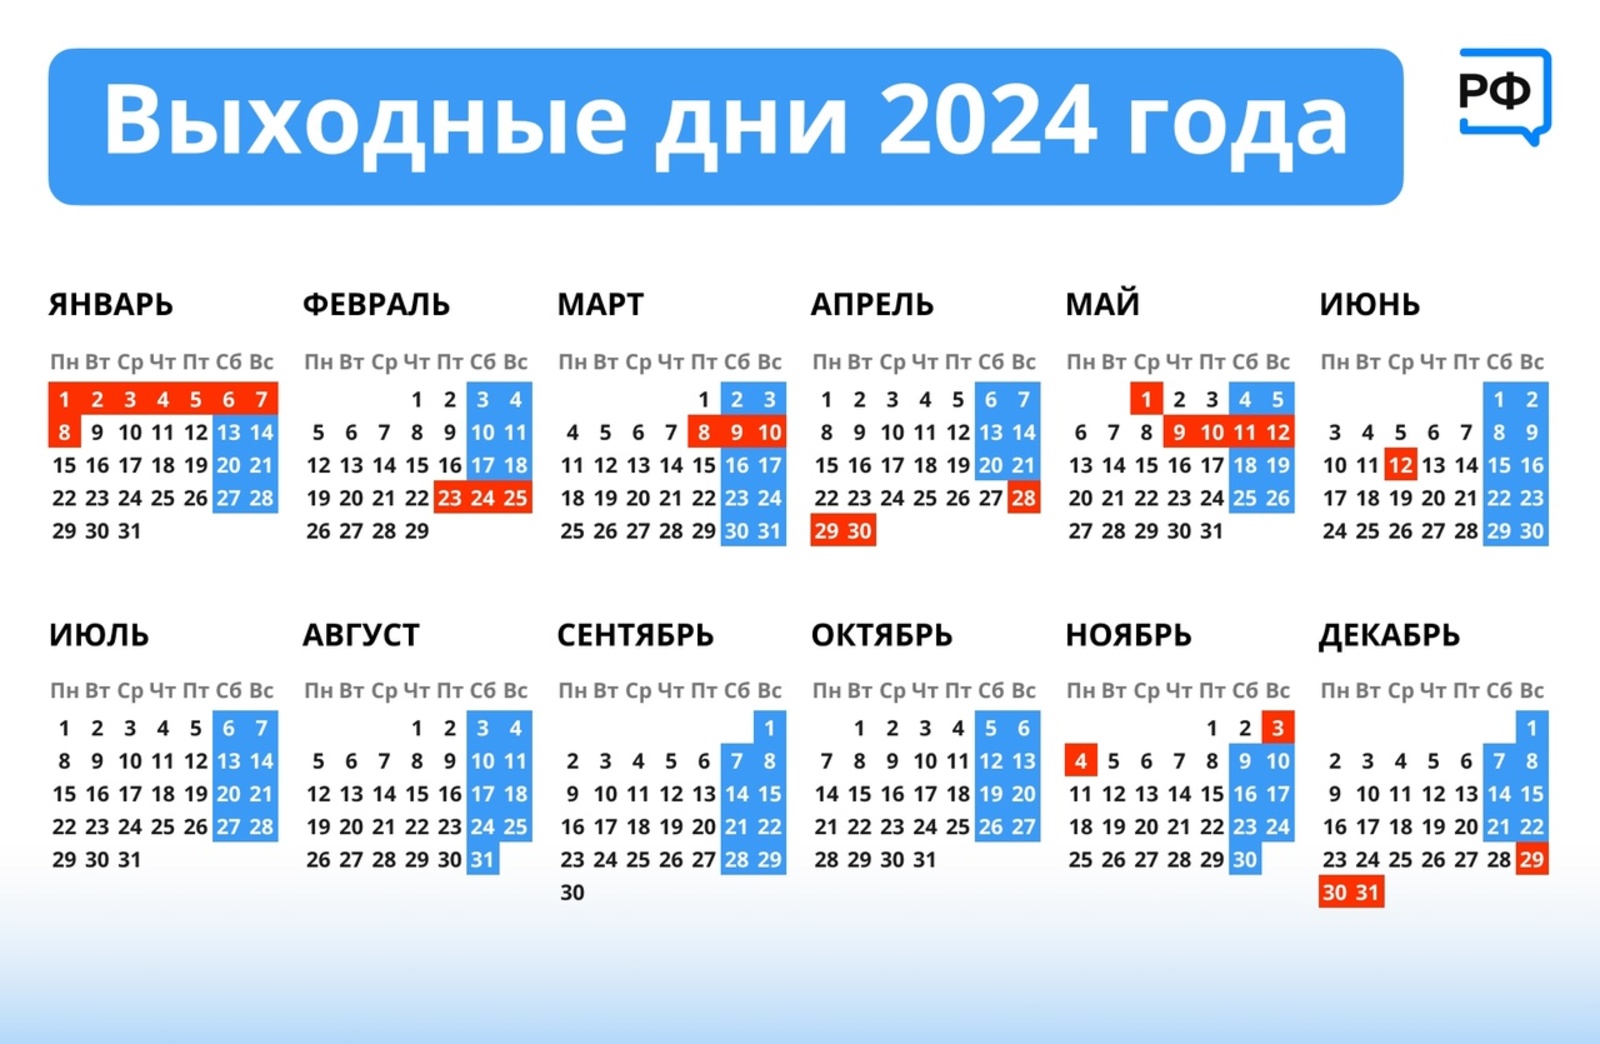 Утверждён календарь праздничных и выходных дней на 2024 год